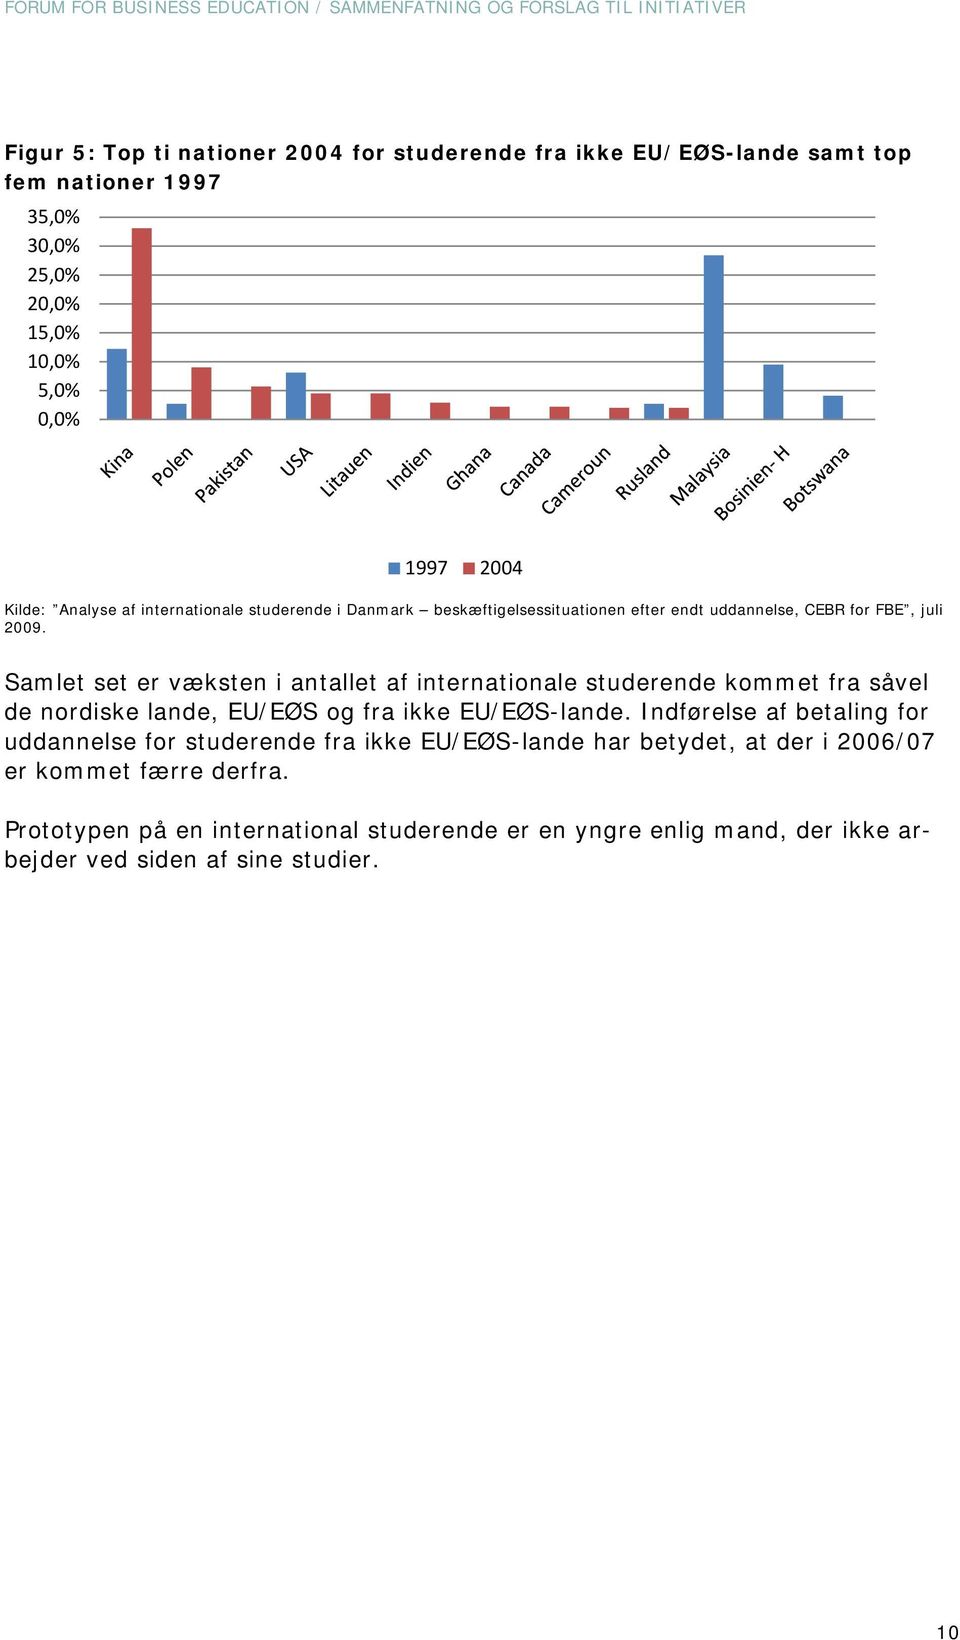 Samlet set er væksten i antallet af internationale studerende kommet fra såvel de nordiske lande, EU/EØS og fra ikke EU/EØS-lande.